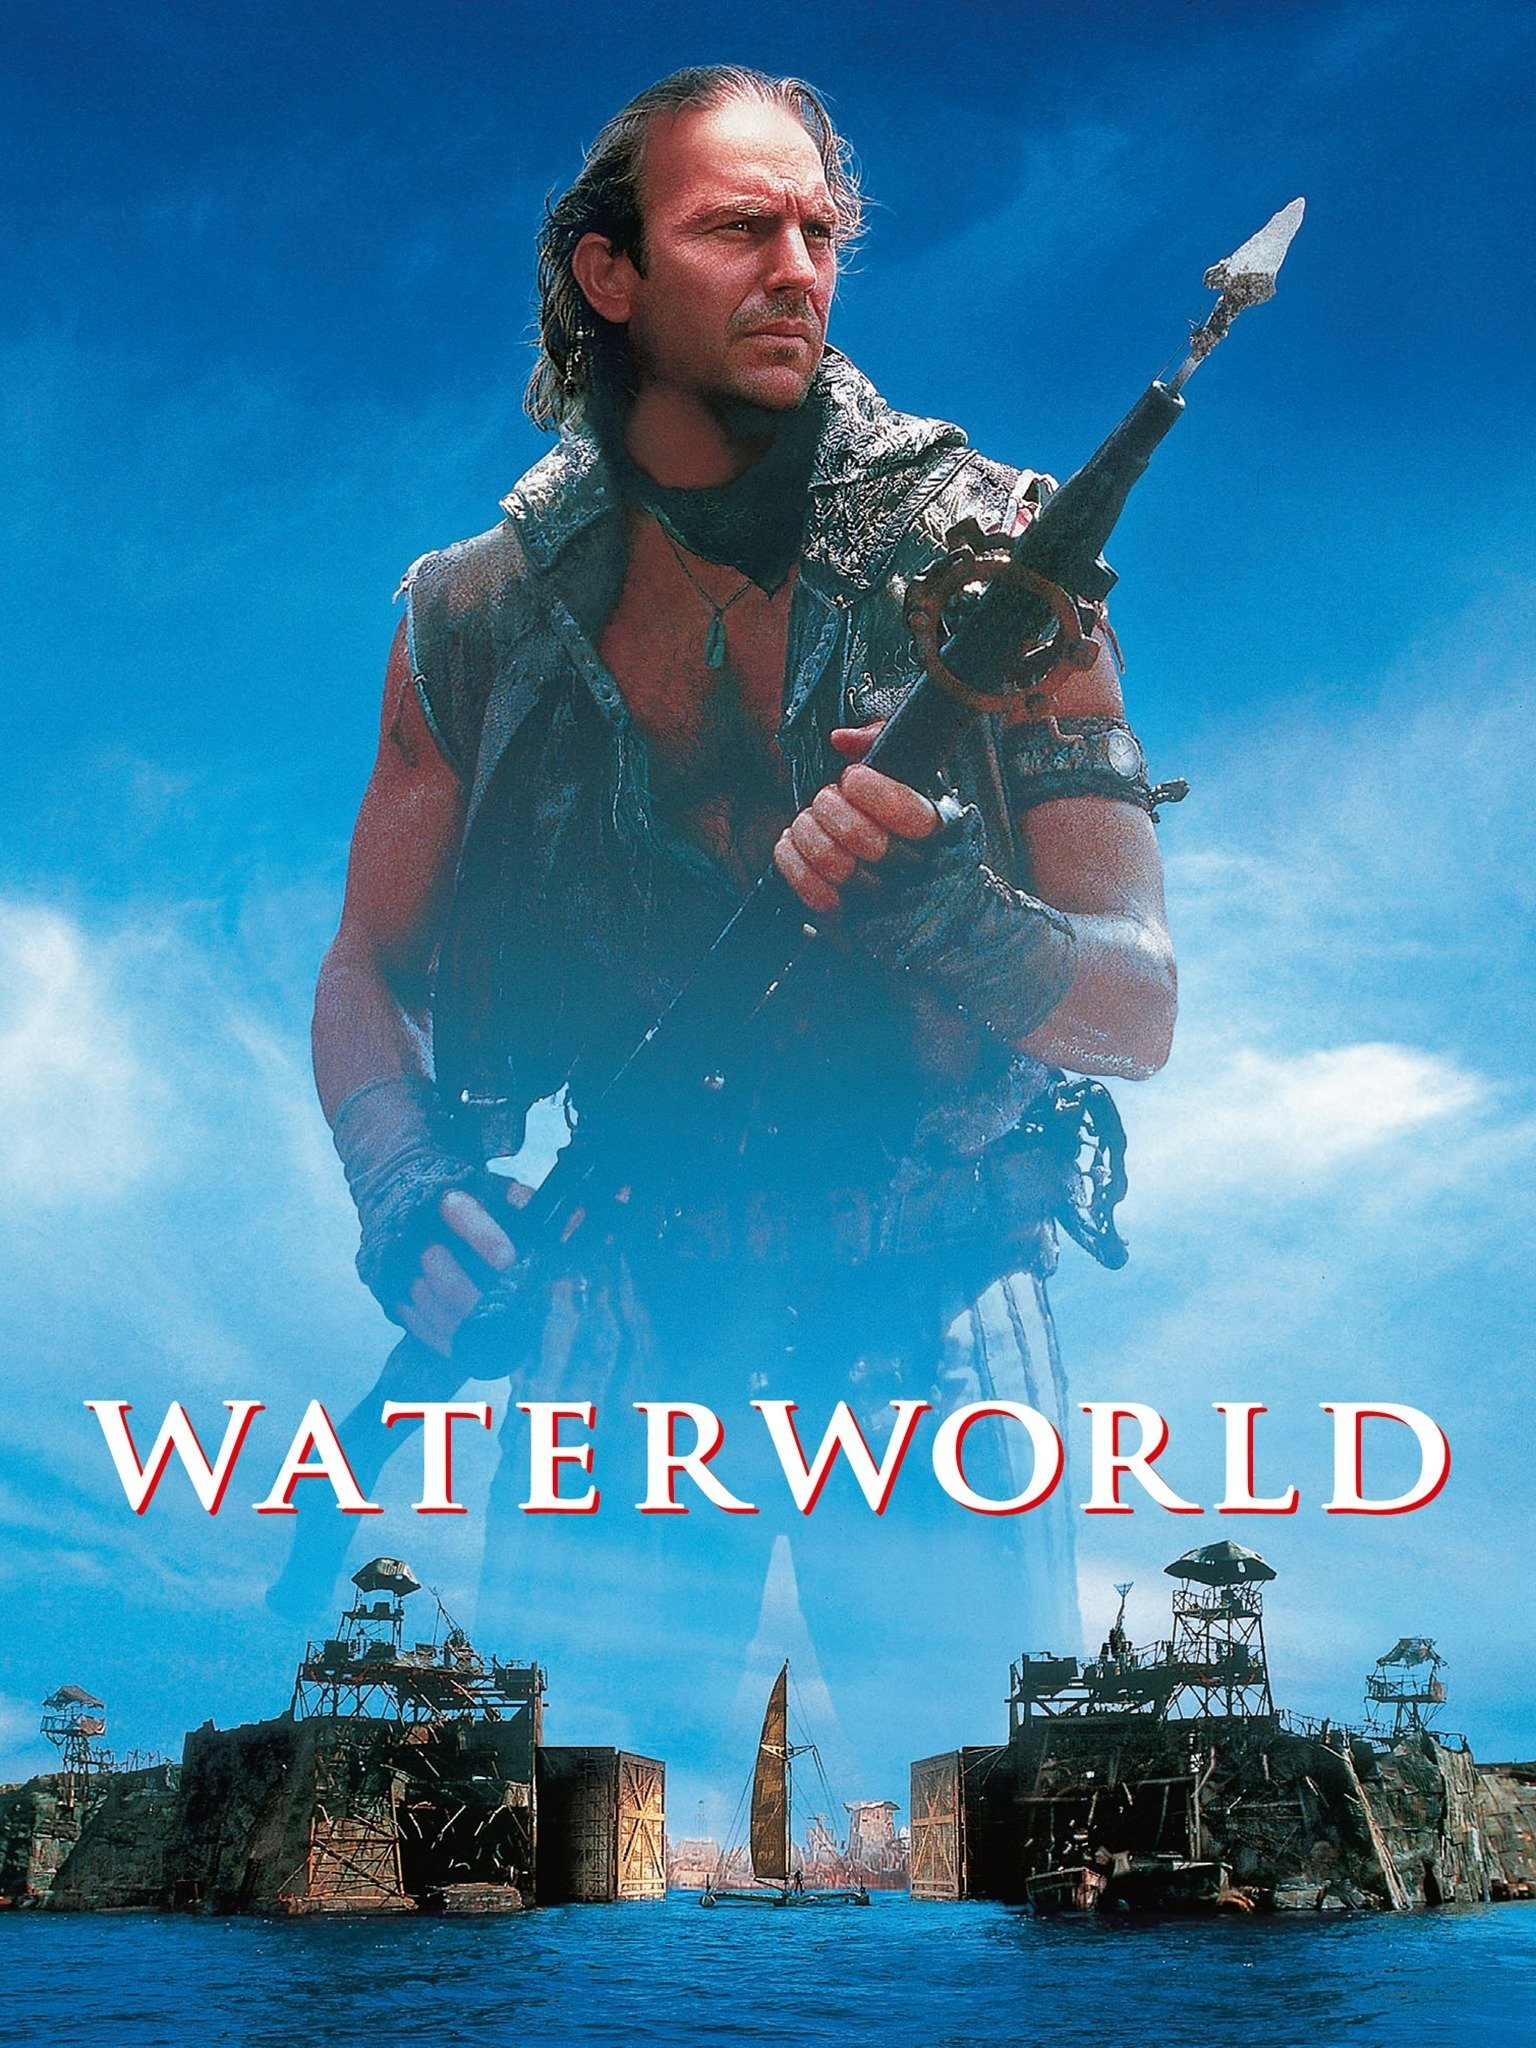 waterworld movie rating